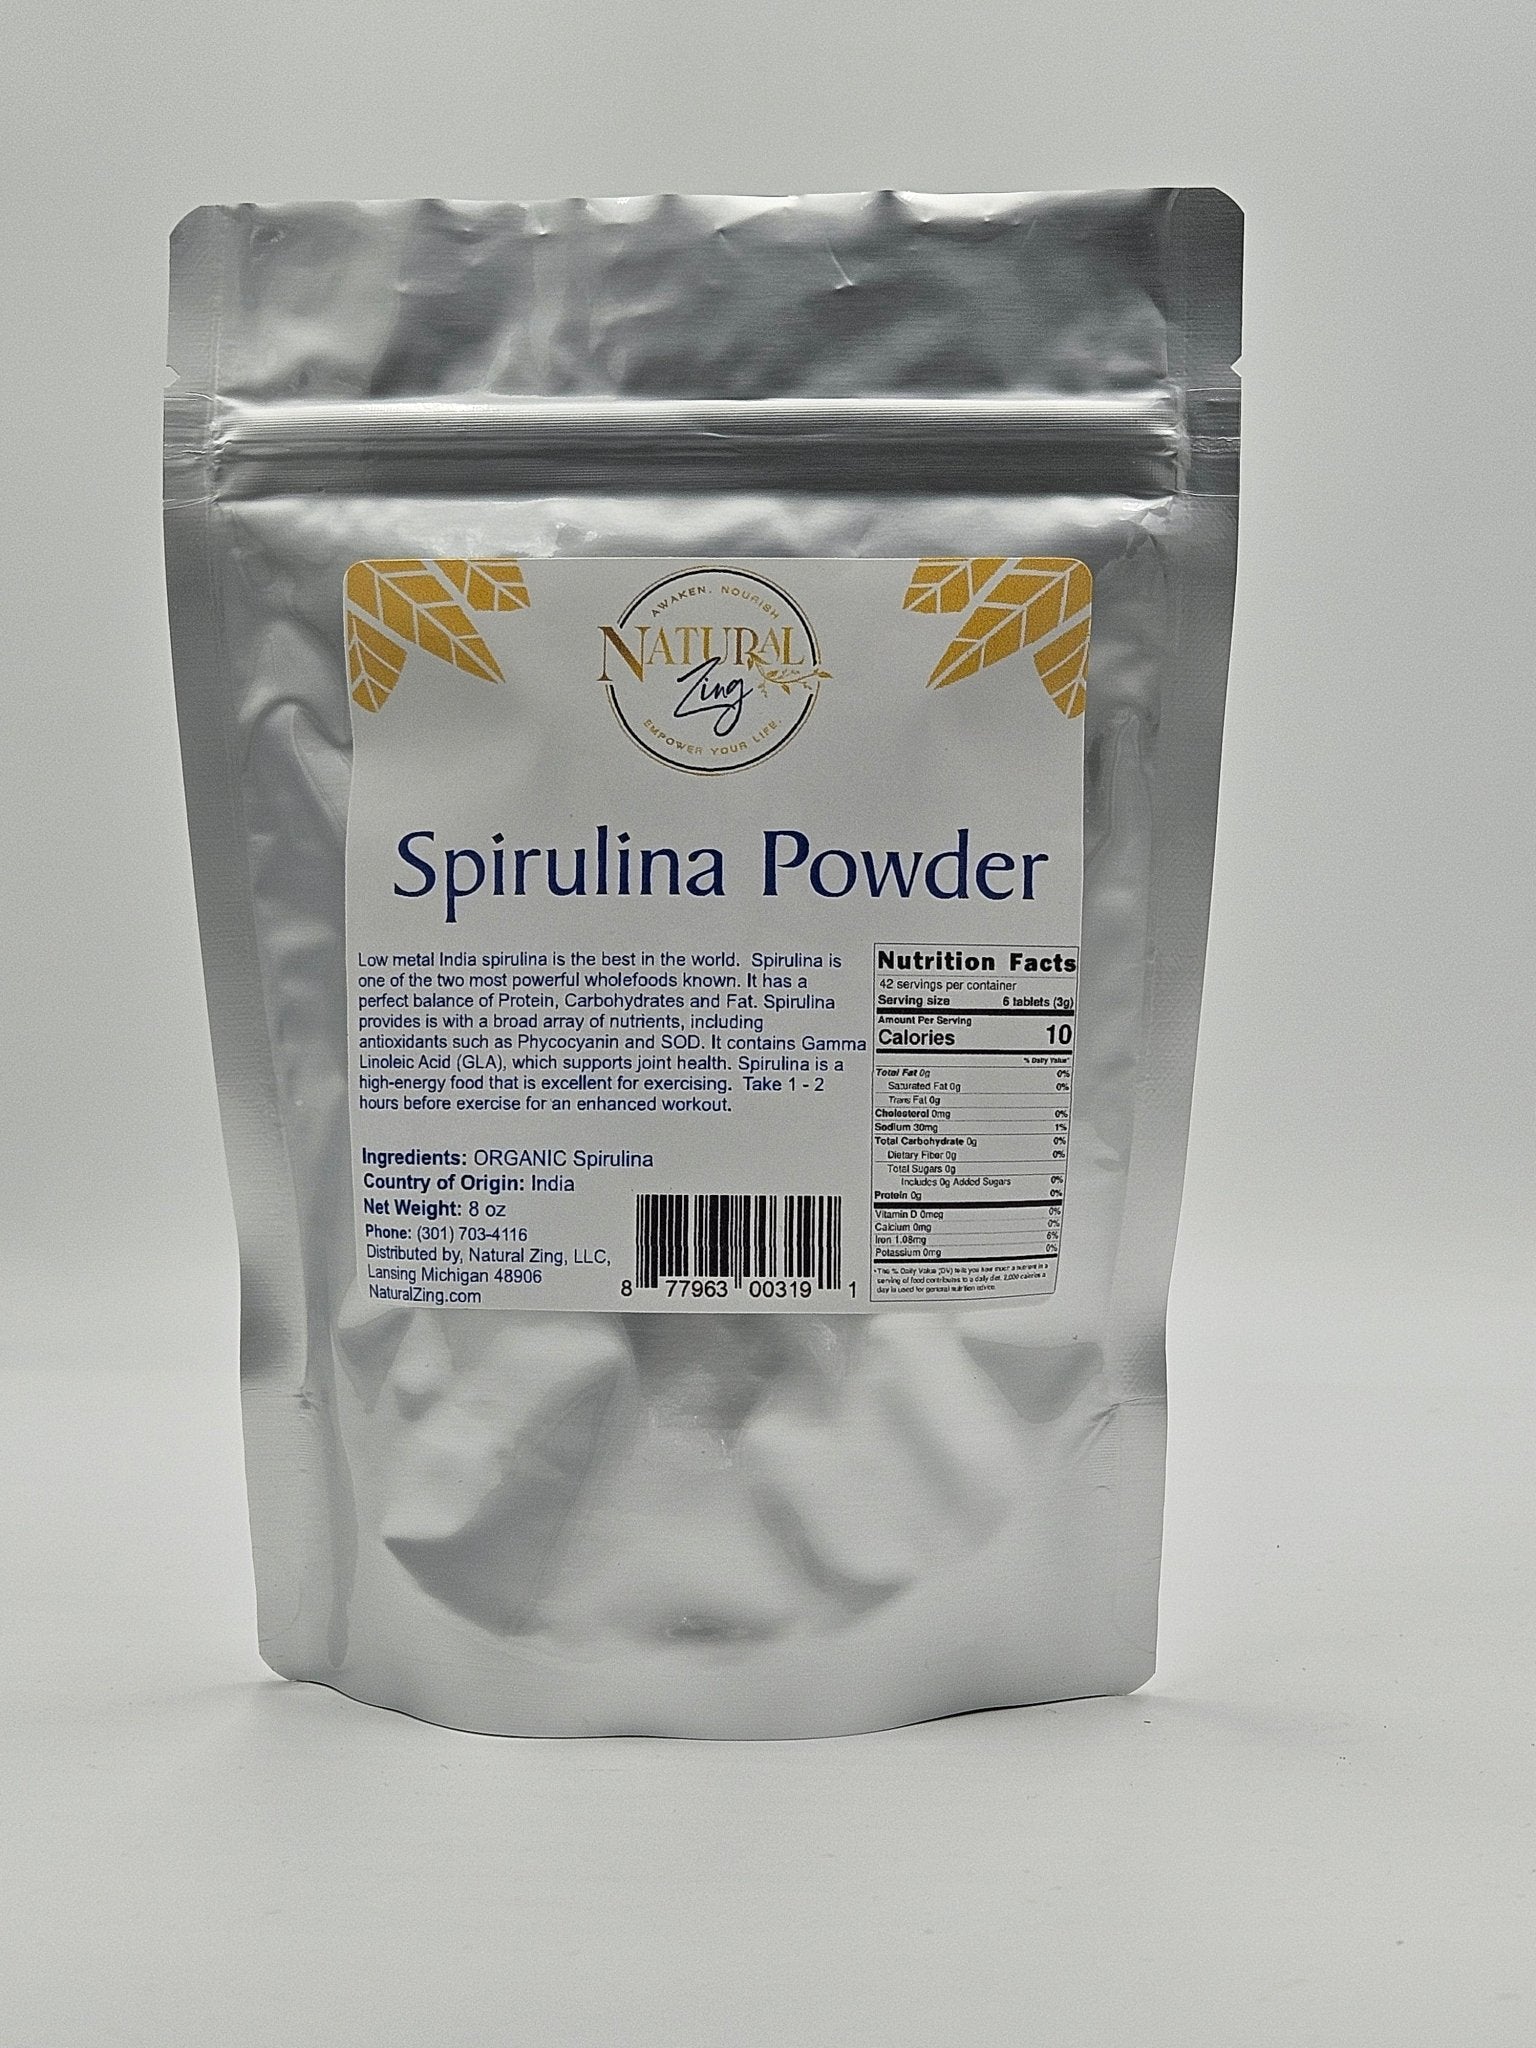 Spirulina Powder 8 oz